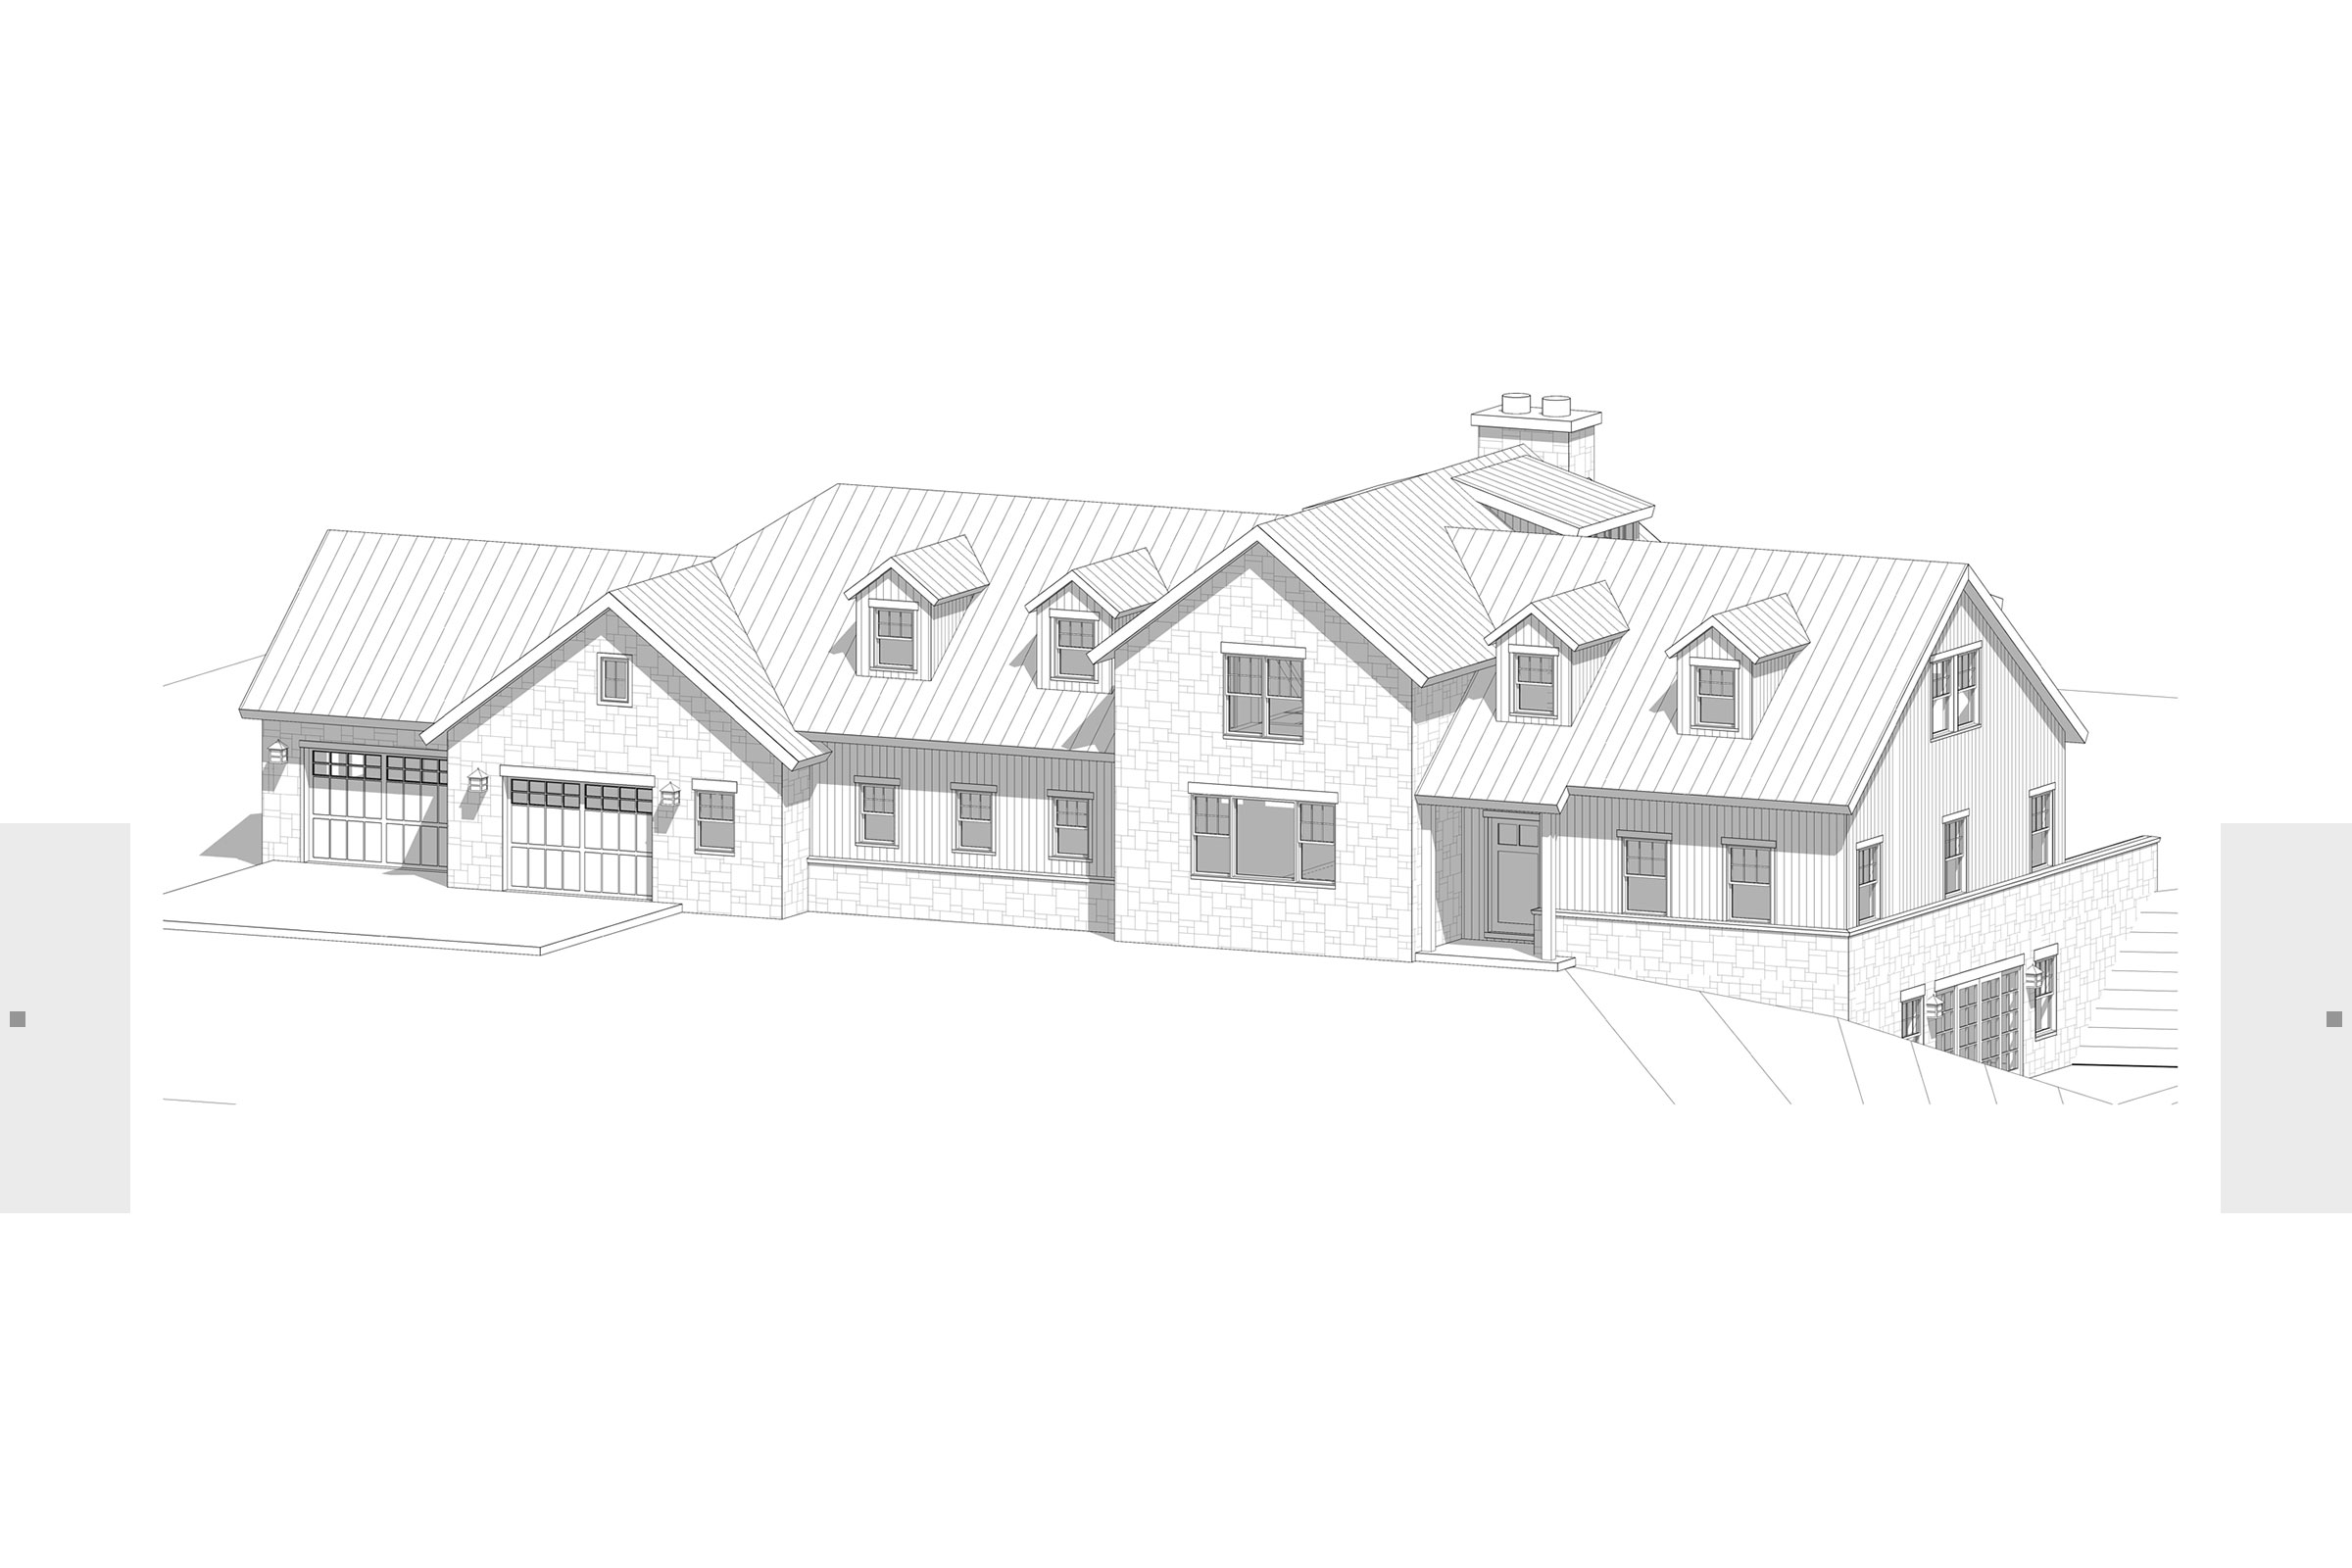 Sketch rendering of home